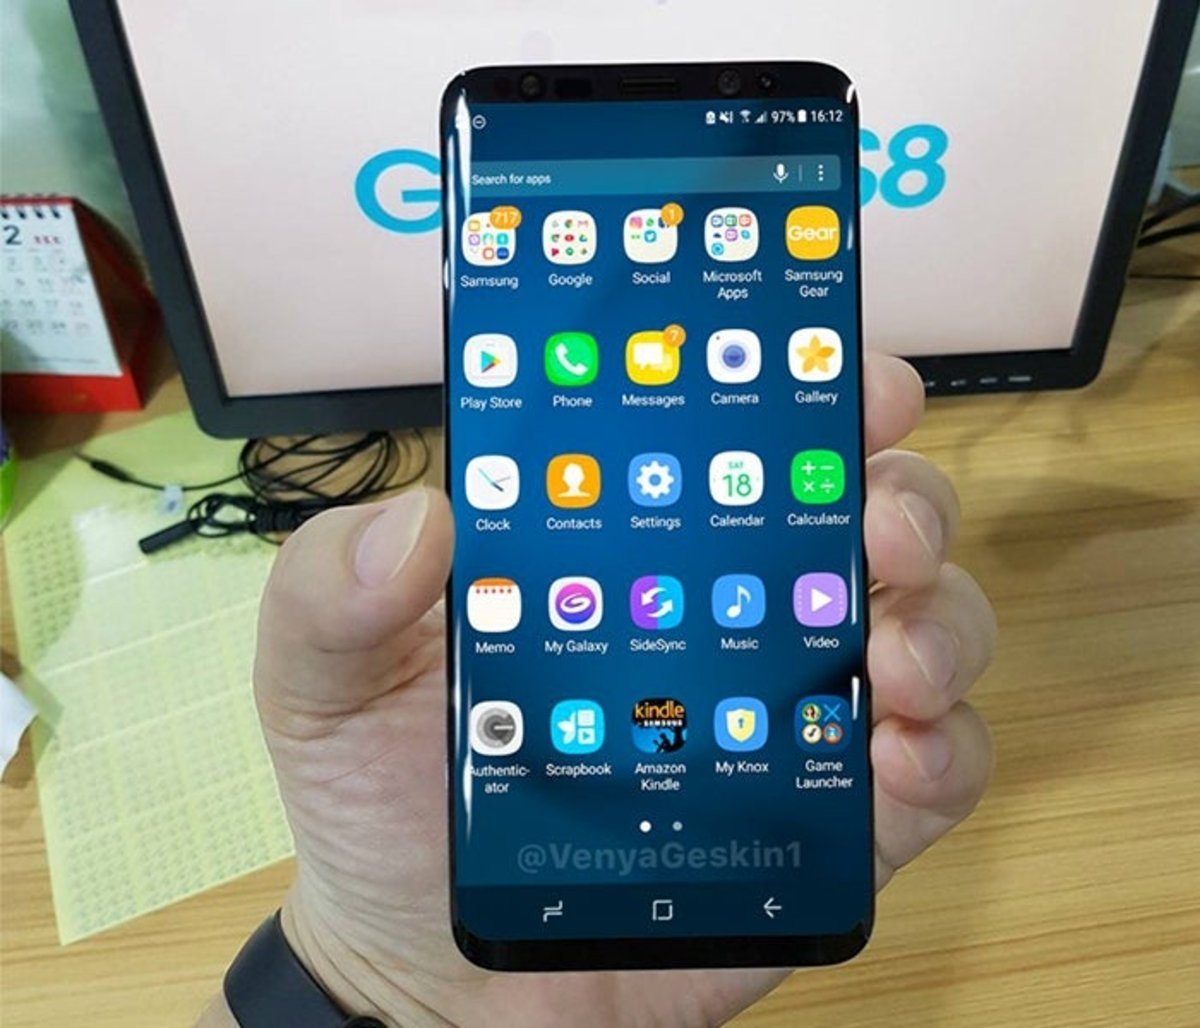 Samsung Galaxy S8, render basado en filtraciones